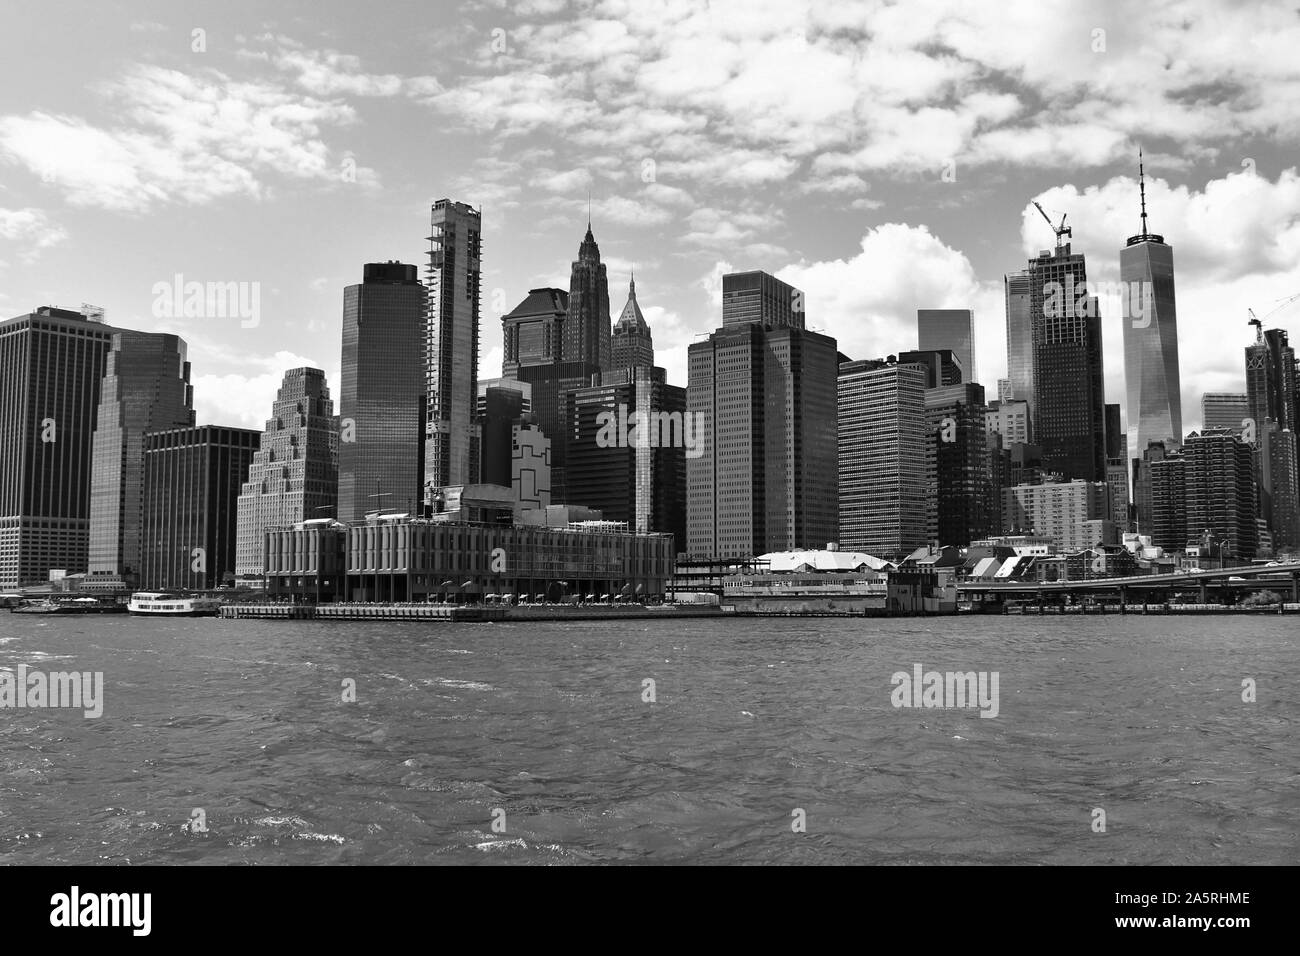 Vue depuis l'East River à New York, des gratte-ciel qui forment l'horizon du centre-ville de Manhattan. Banque D'Images